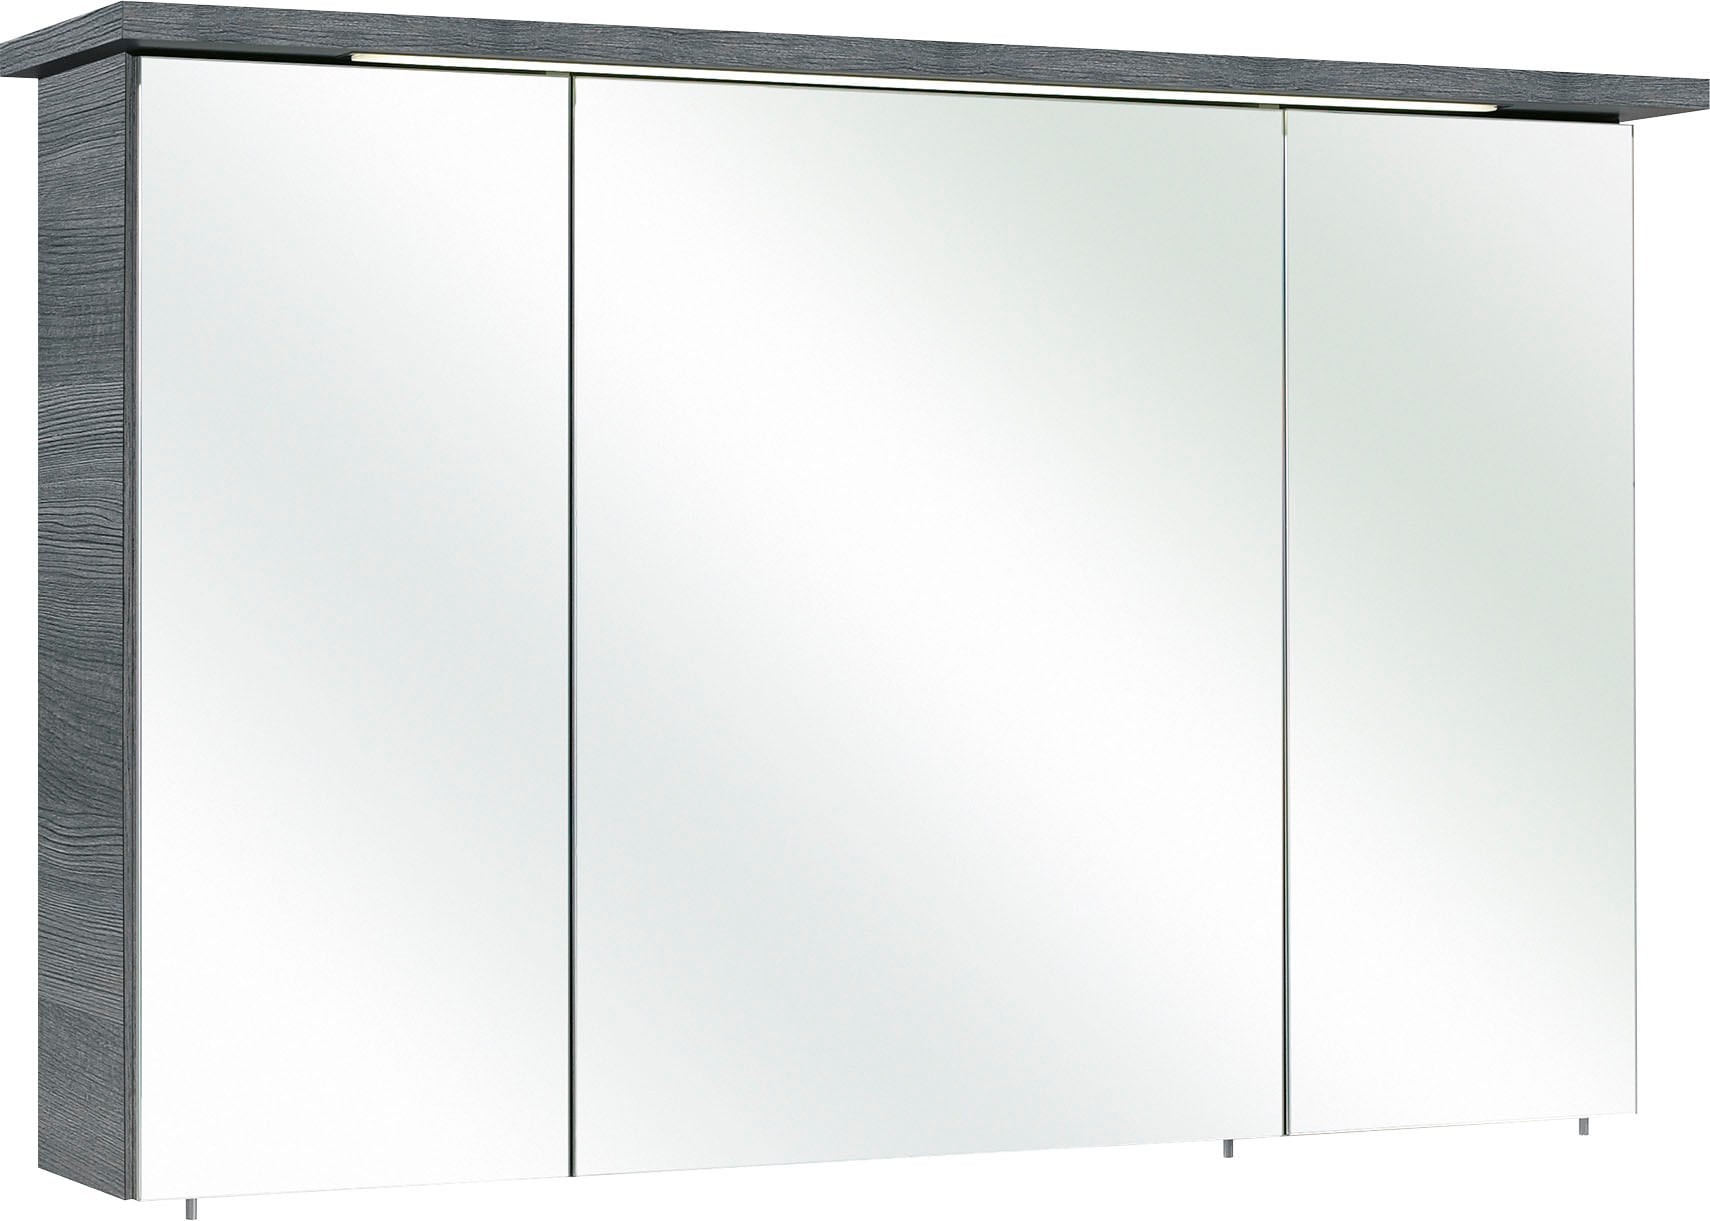 PELIPAL Spiegelschrank "Quickset 328", Breite 115 cm, 3-türig, eingelassene LED-Beleuchtung, Steckdosenbox